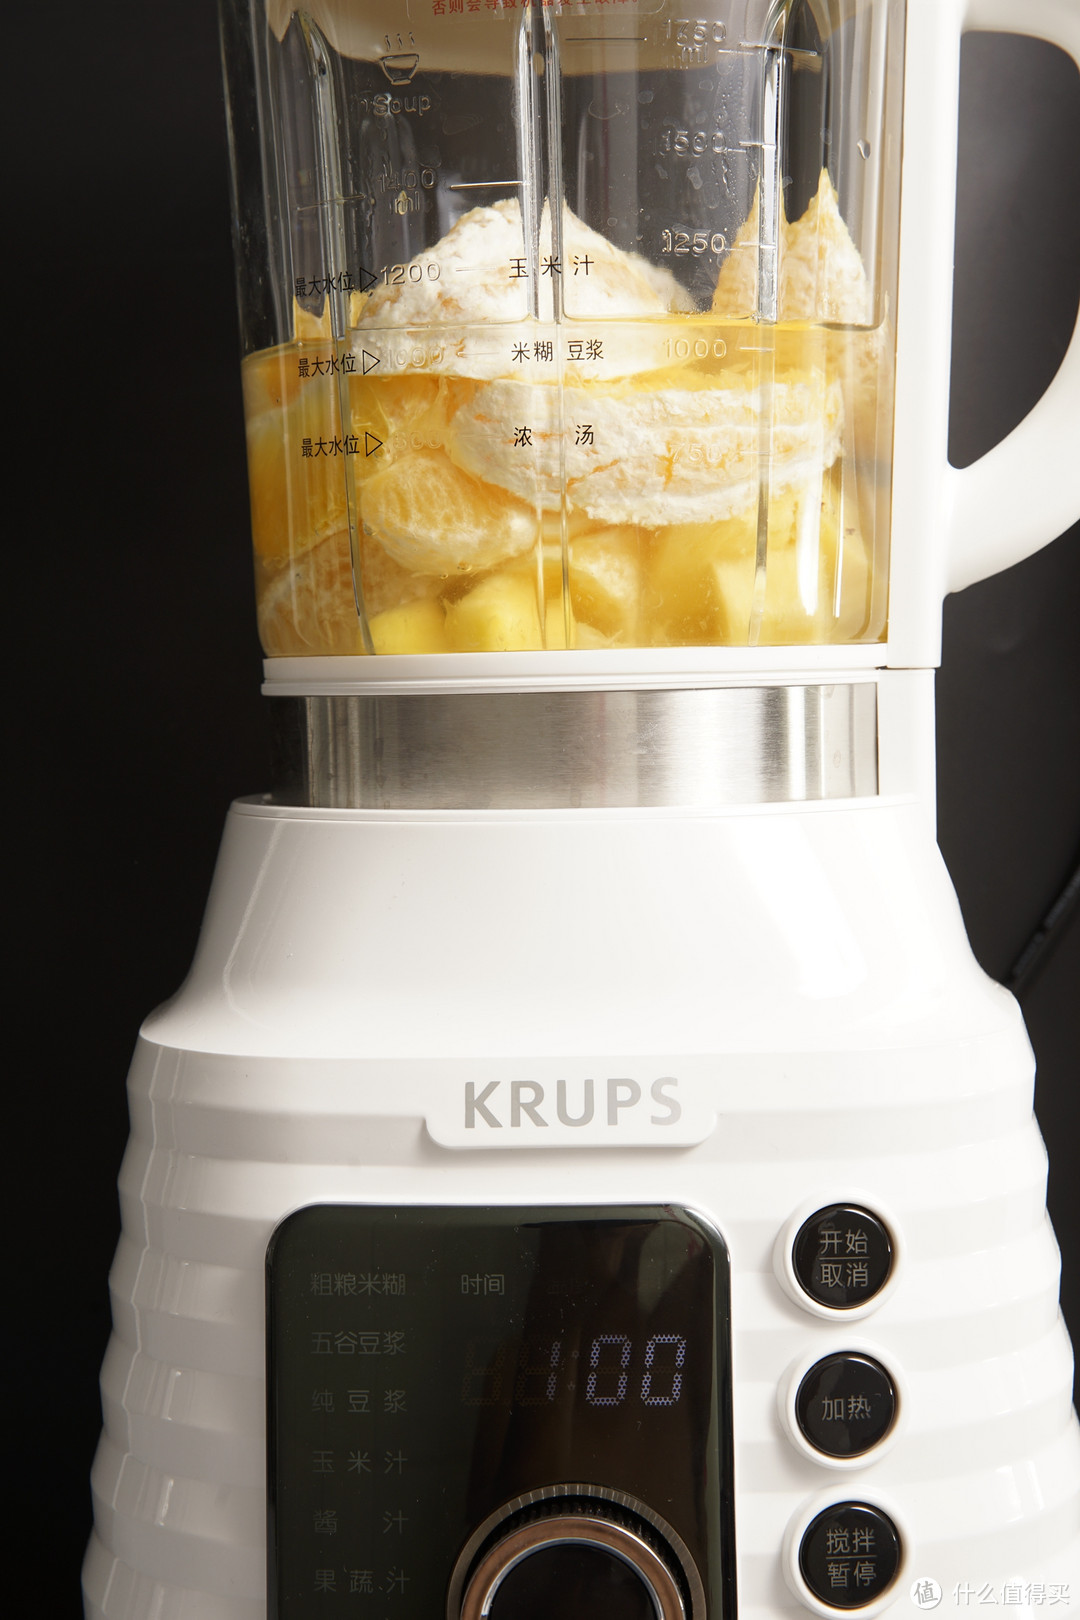 真100度加热，家庭早餐的解决方案----评测krups 全自动多功能破壁料理机